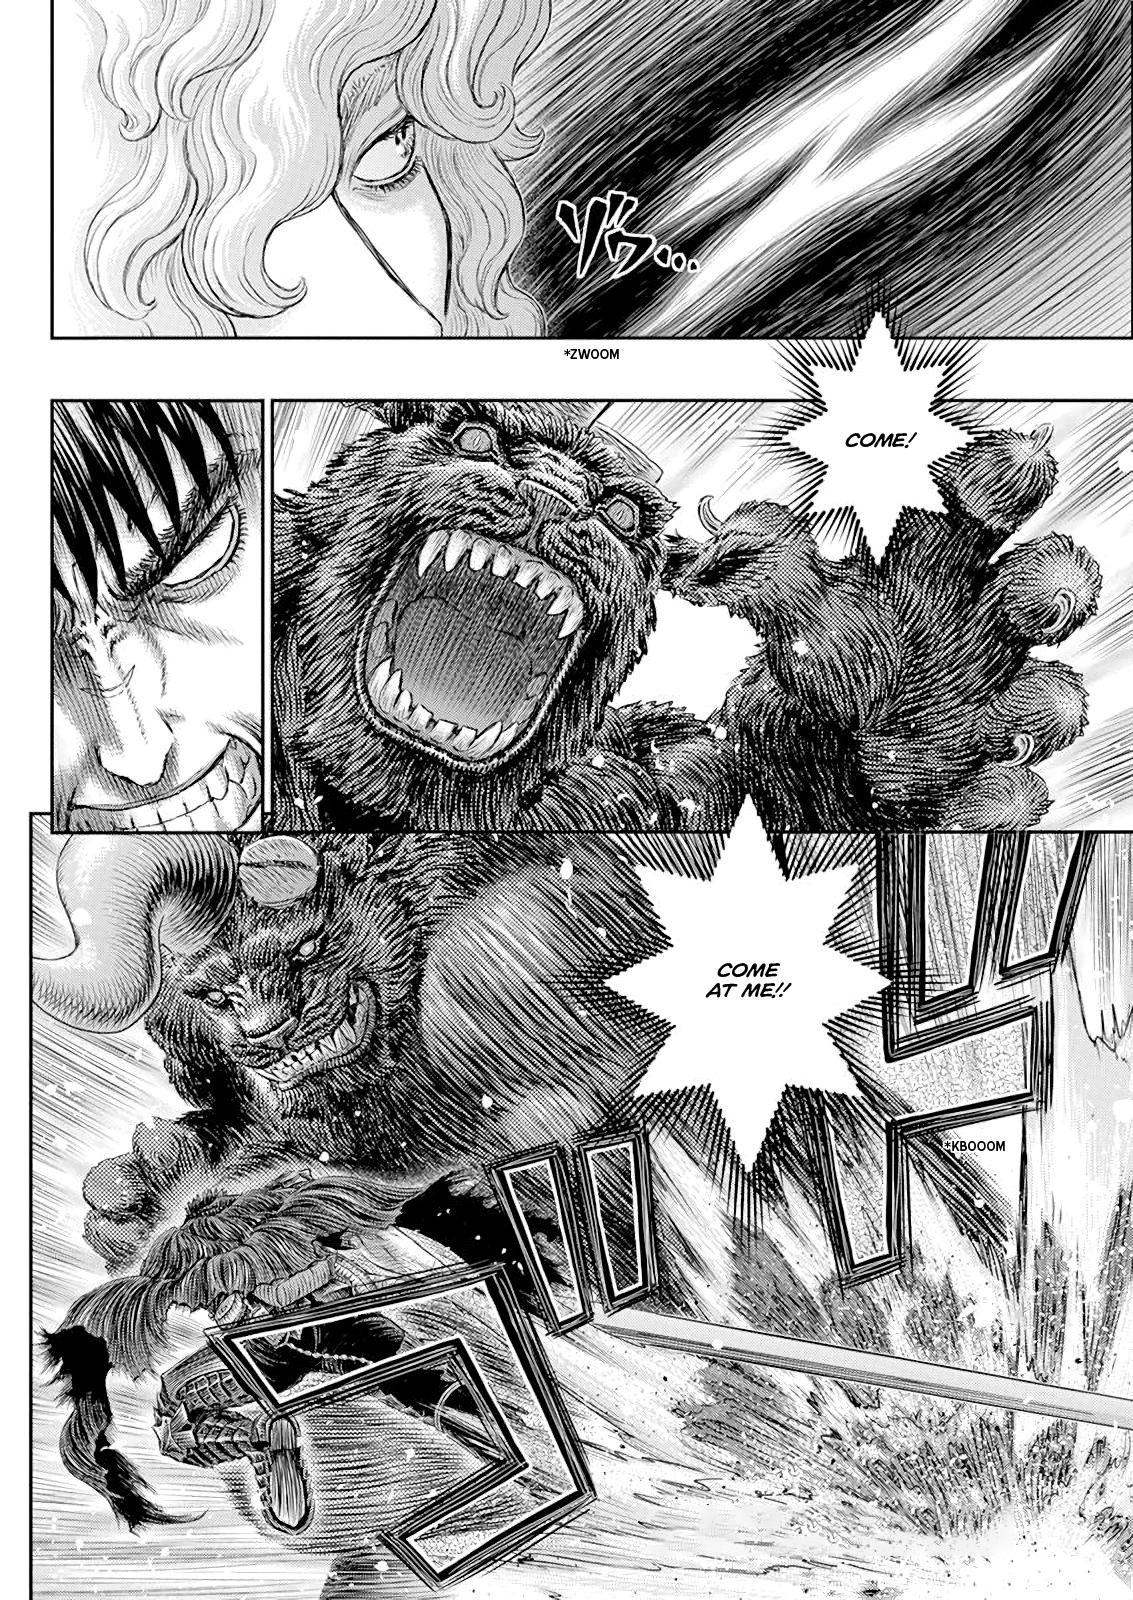 Berserk Manga Chapter 367 image 02